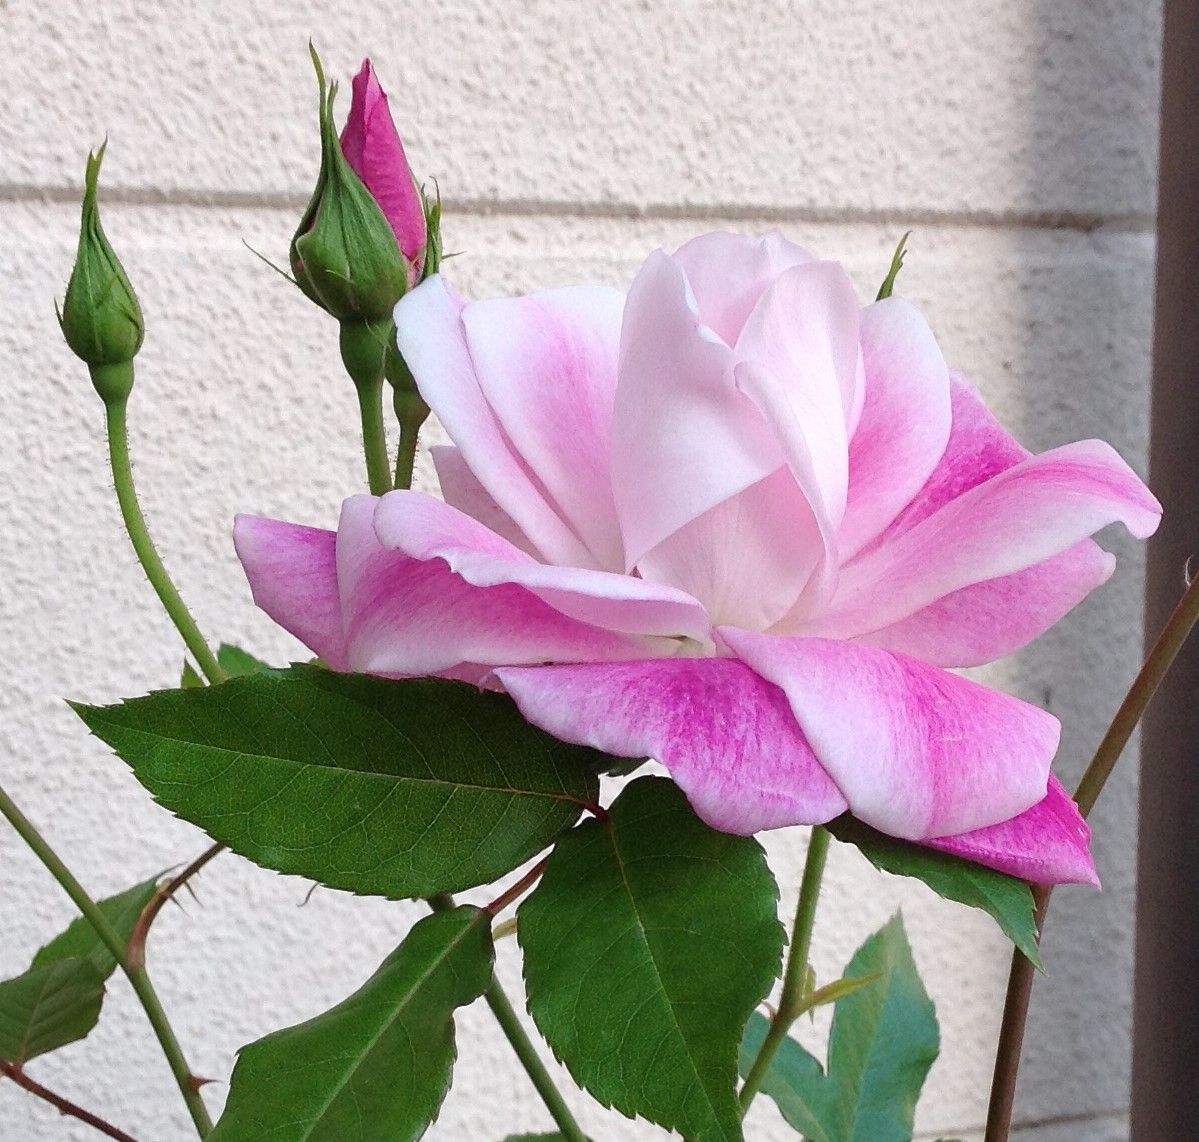 ①19/4/16 バラ「ブリリアント・ピンク・アイスバーグ」の色合いがピンクに白の混合が